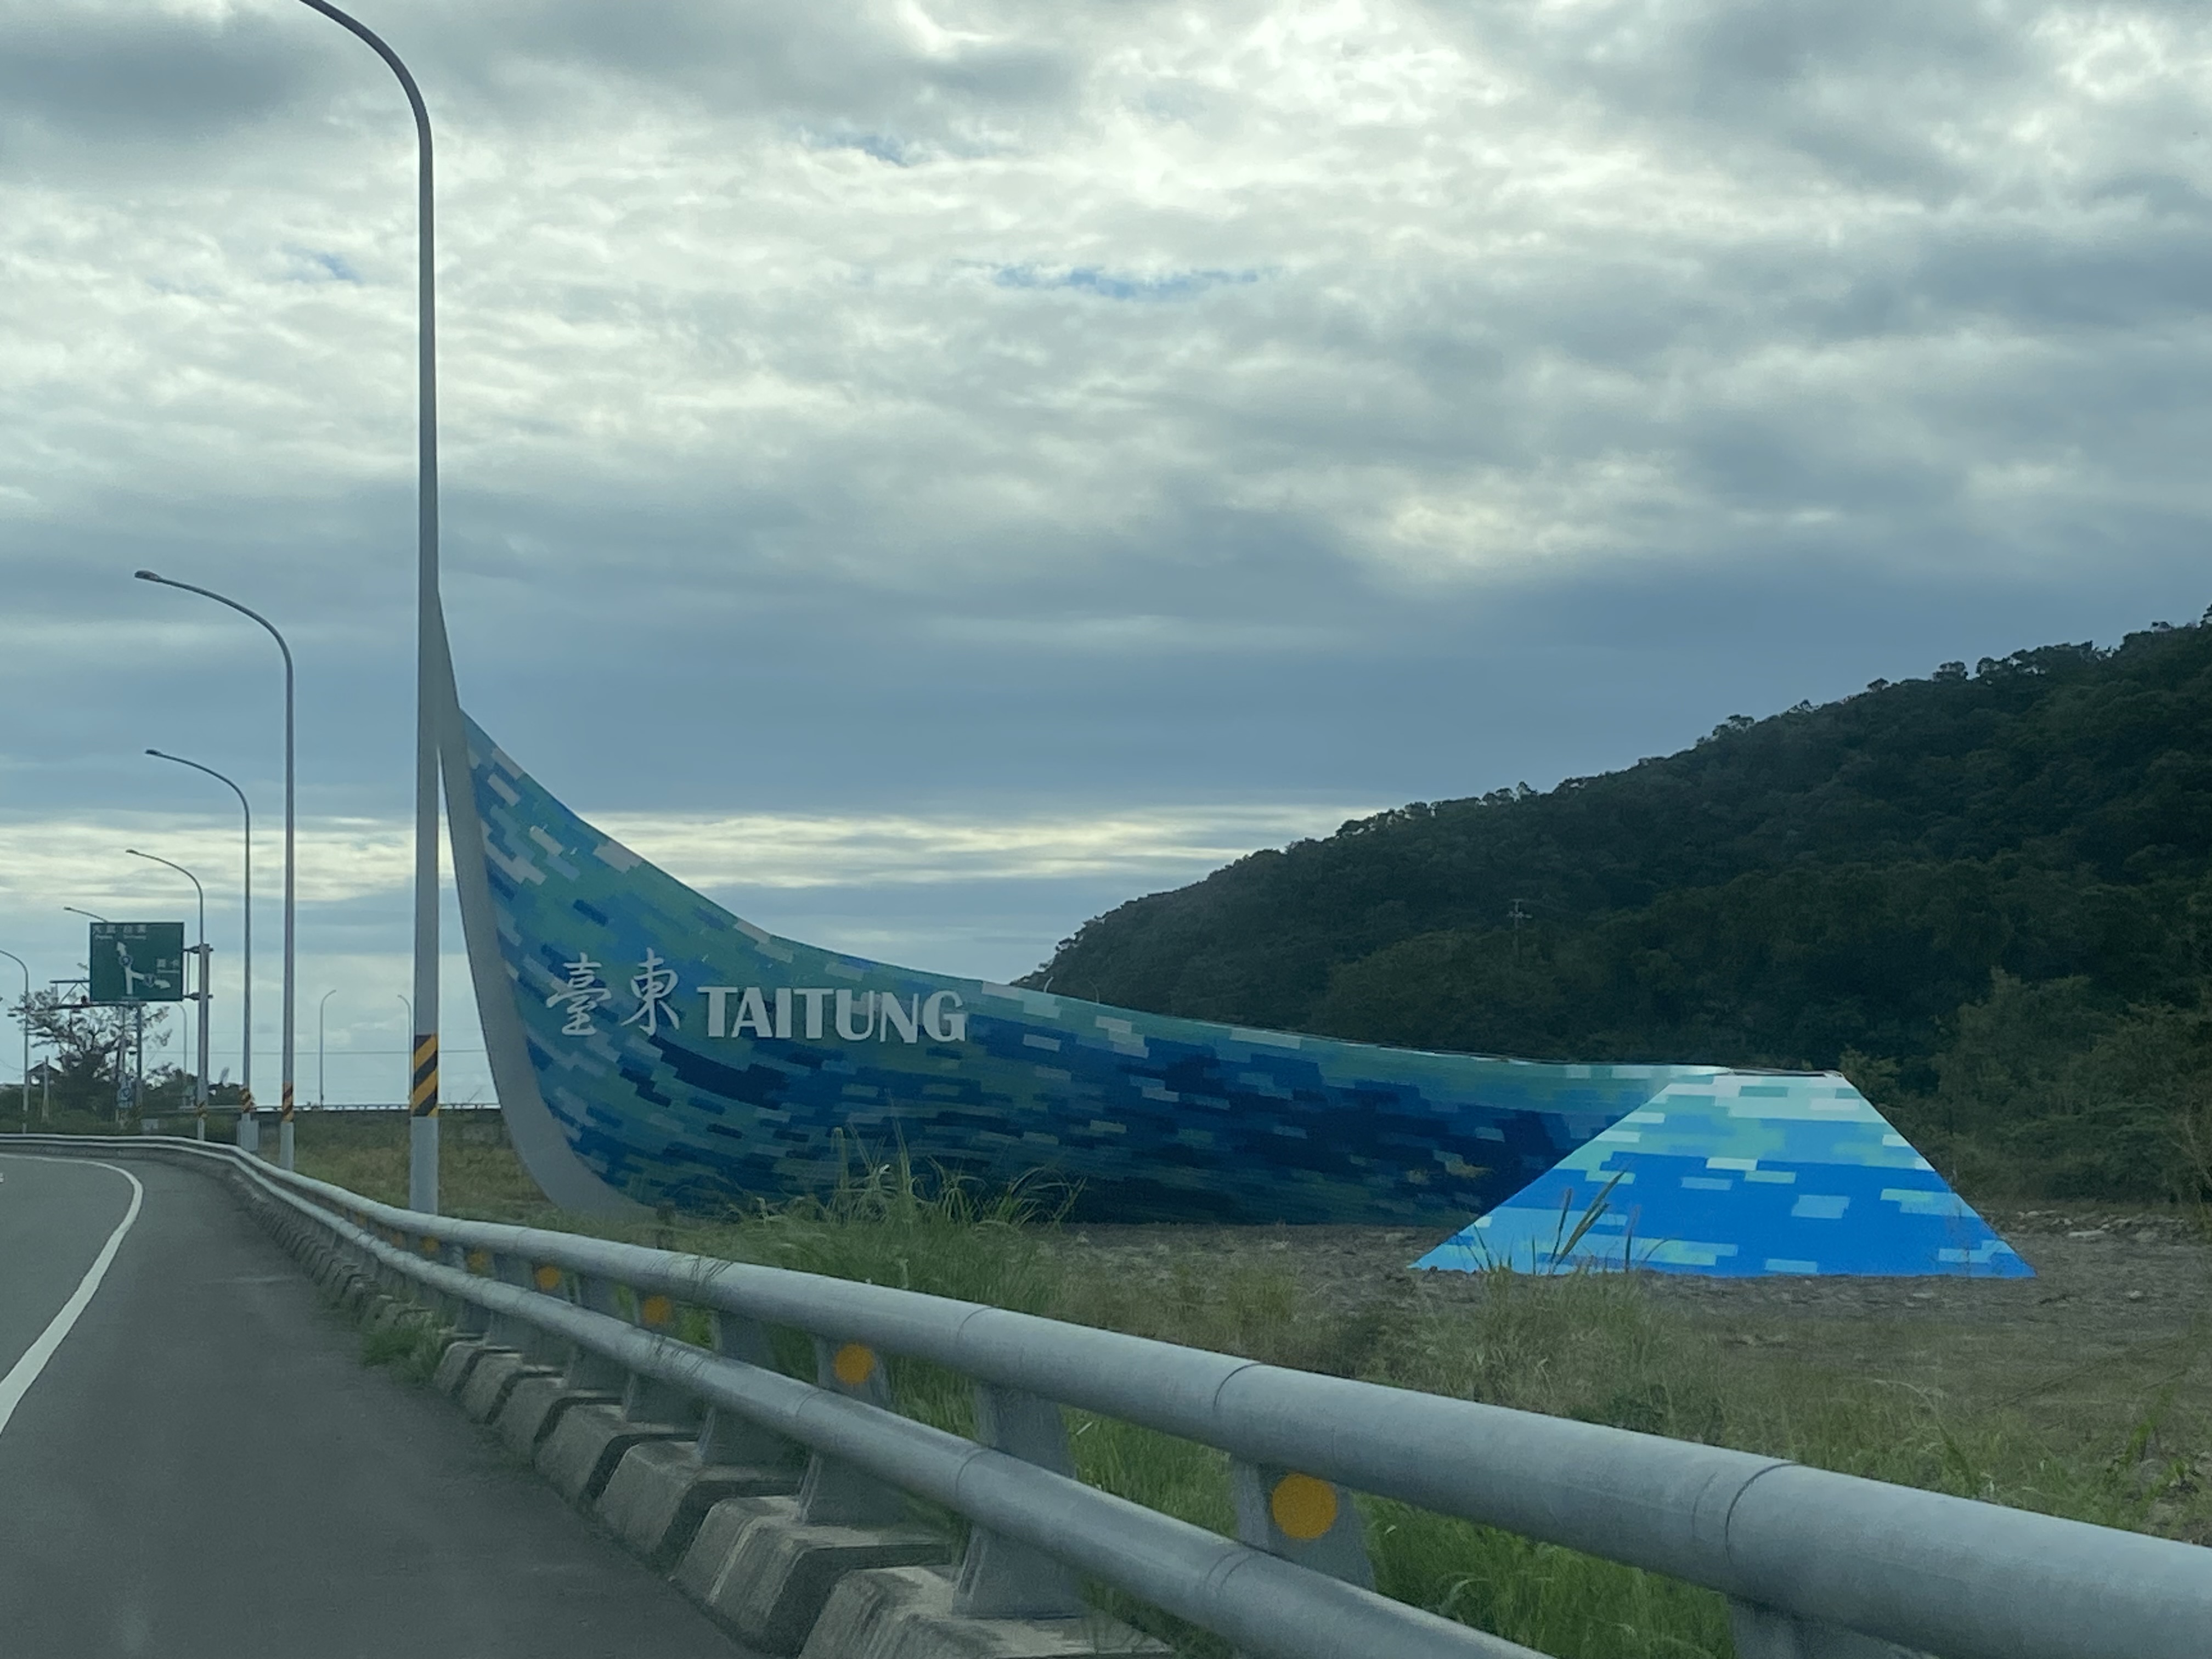 台东县政府文化处表示，「海的启航」是县界标志，非艺术装置作品。记者尤聪光／摄影